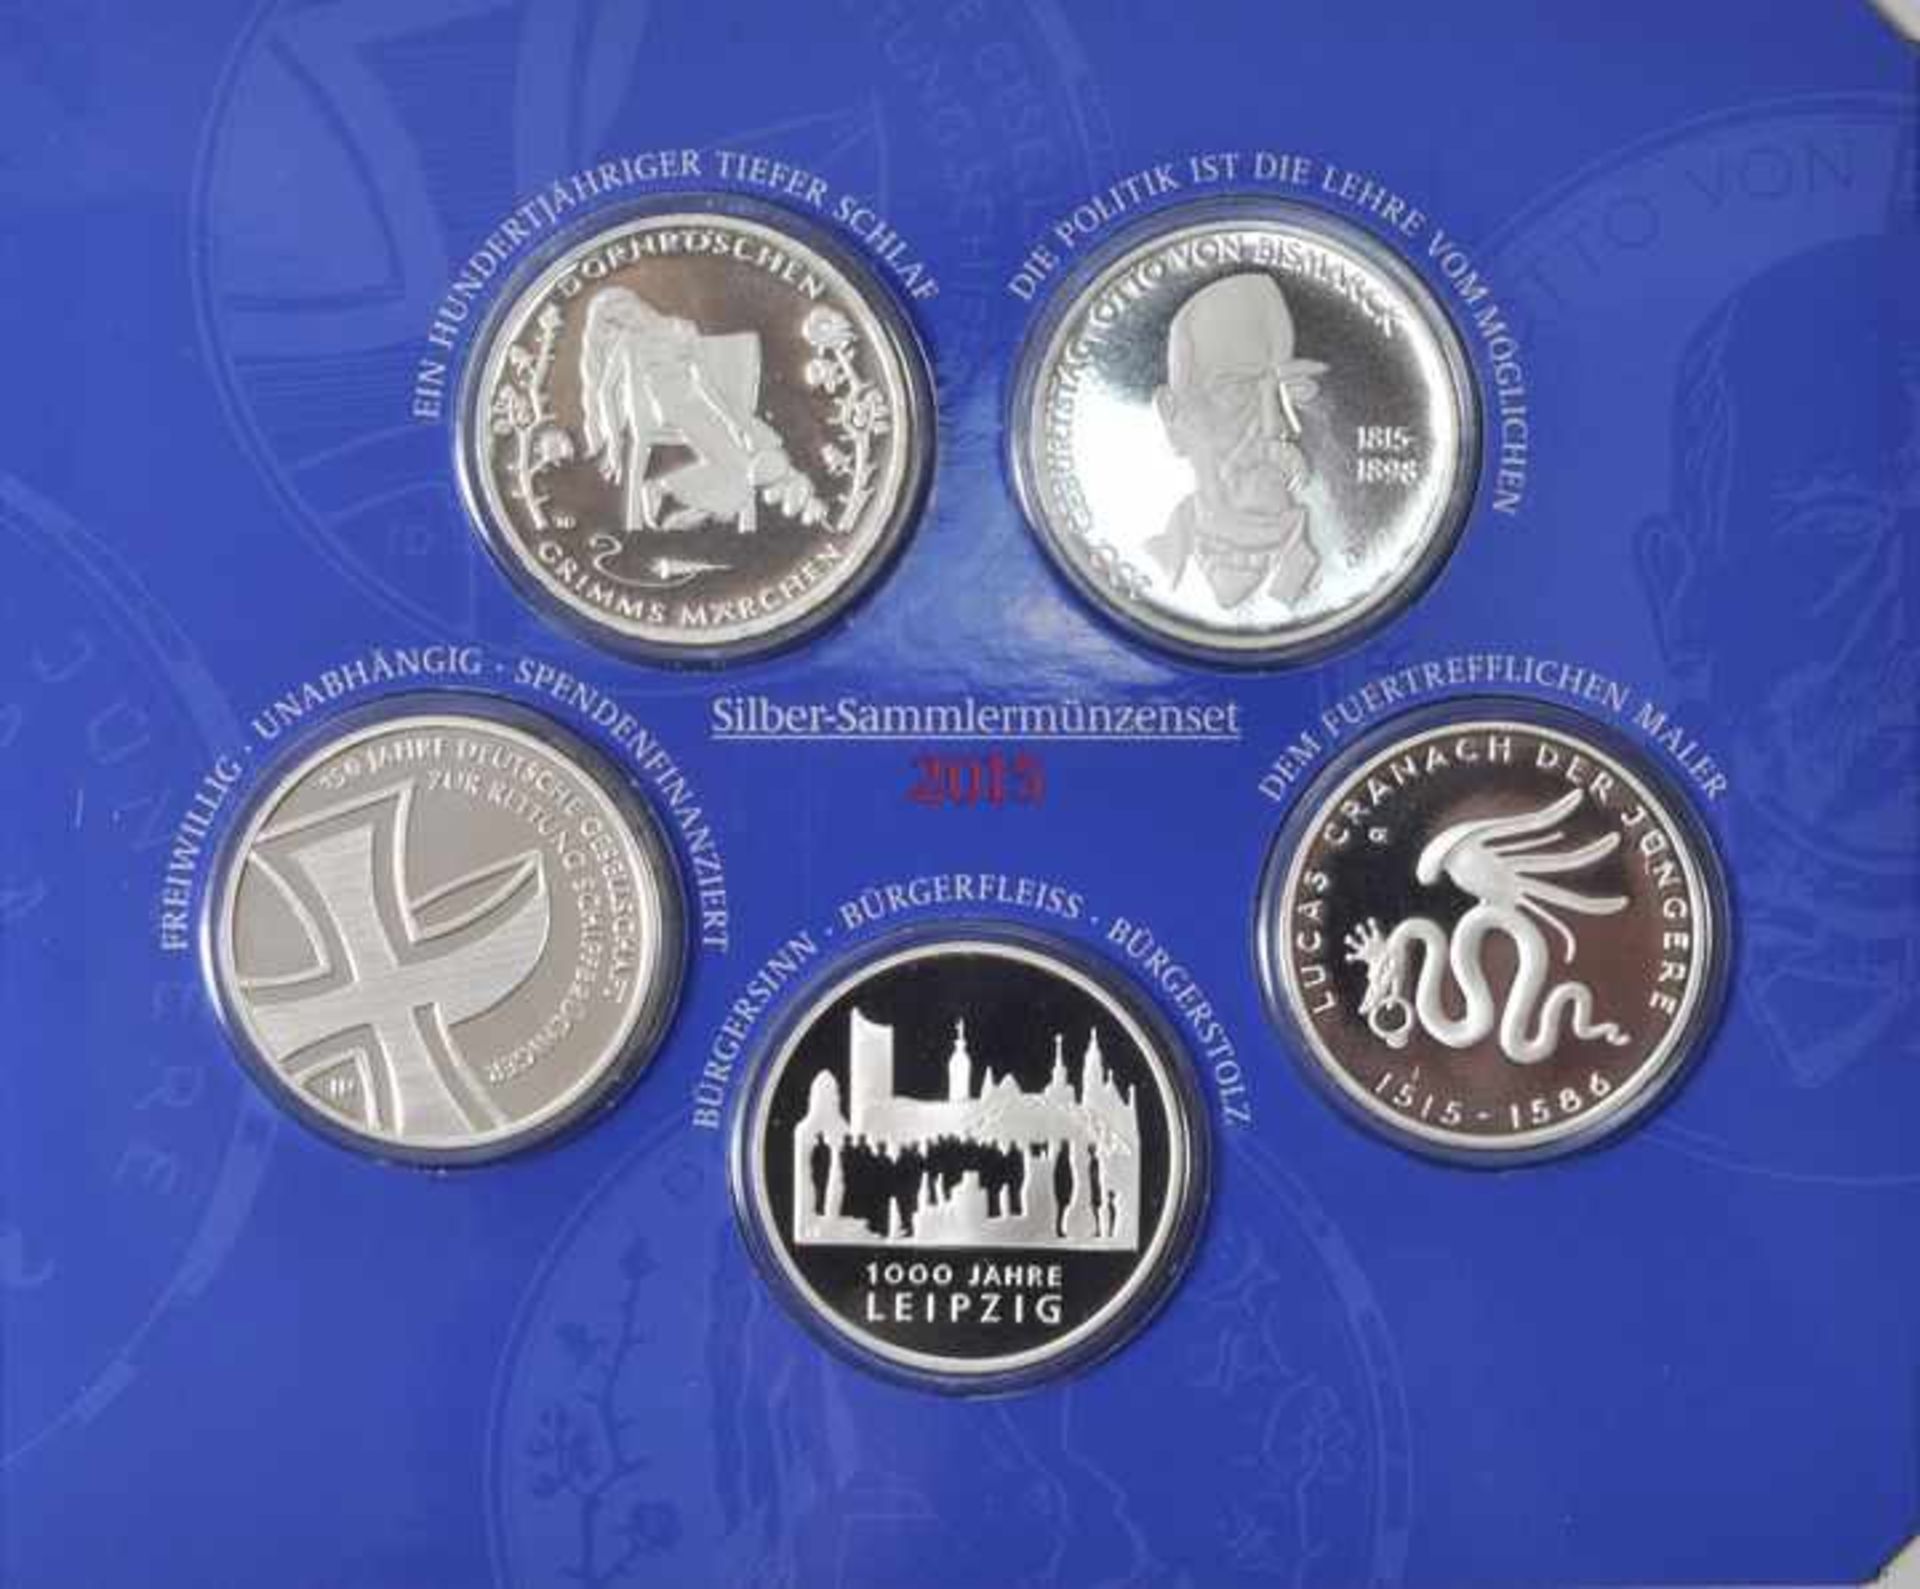 Sammlermünzenset, 5 x 10 Euro, BRD, 2015Jg. 2015, Silber 625, Spiegelglanz, A, D, G, F, J. Orig. - Bild 2 aus 3